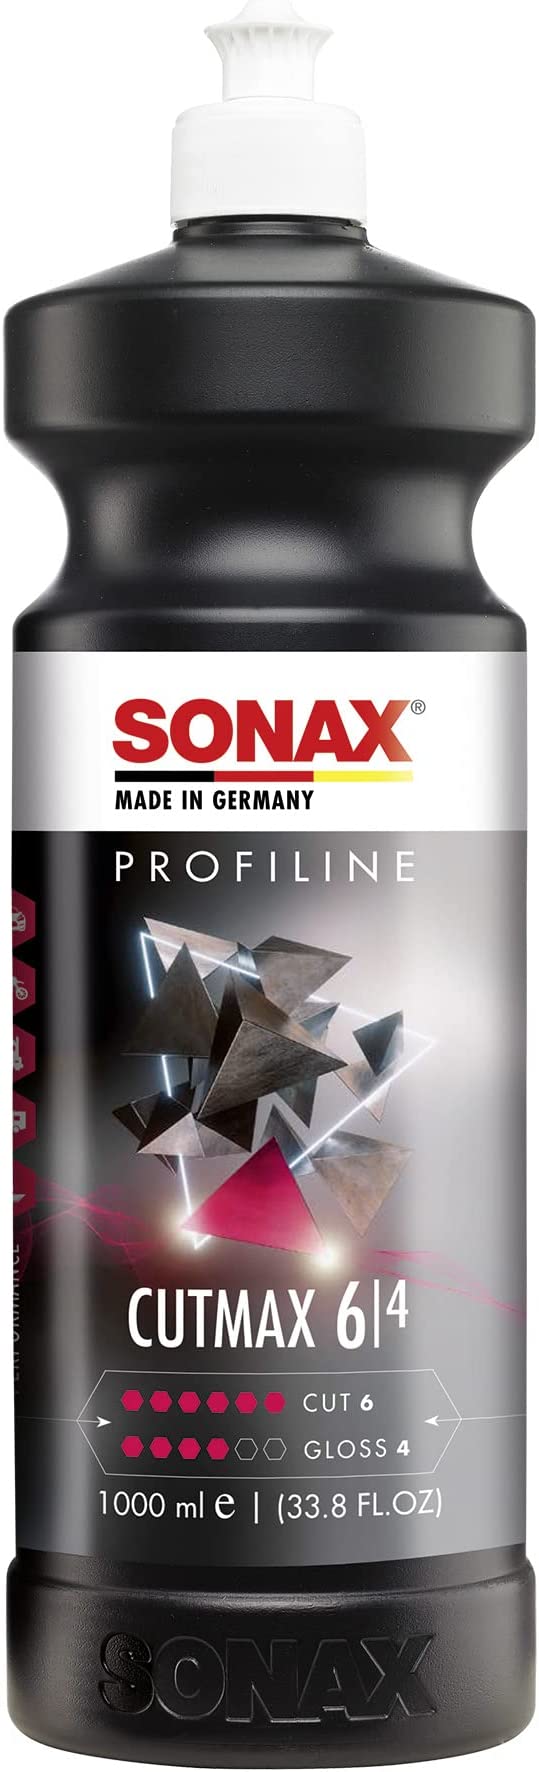  Sonax CutMax, Cut & Finish, Perfect Finish Kit